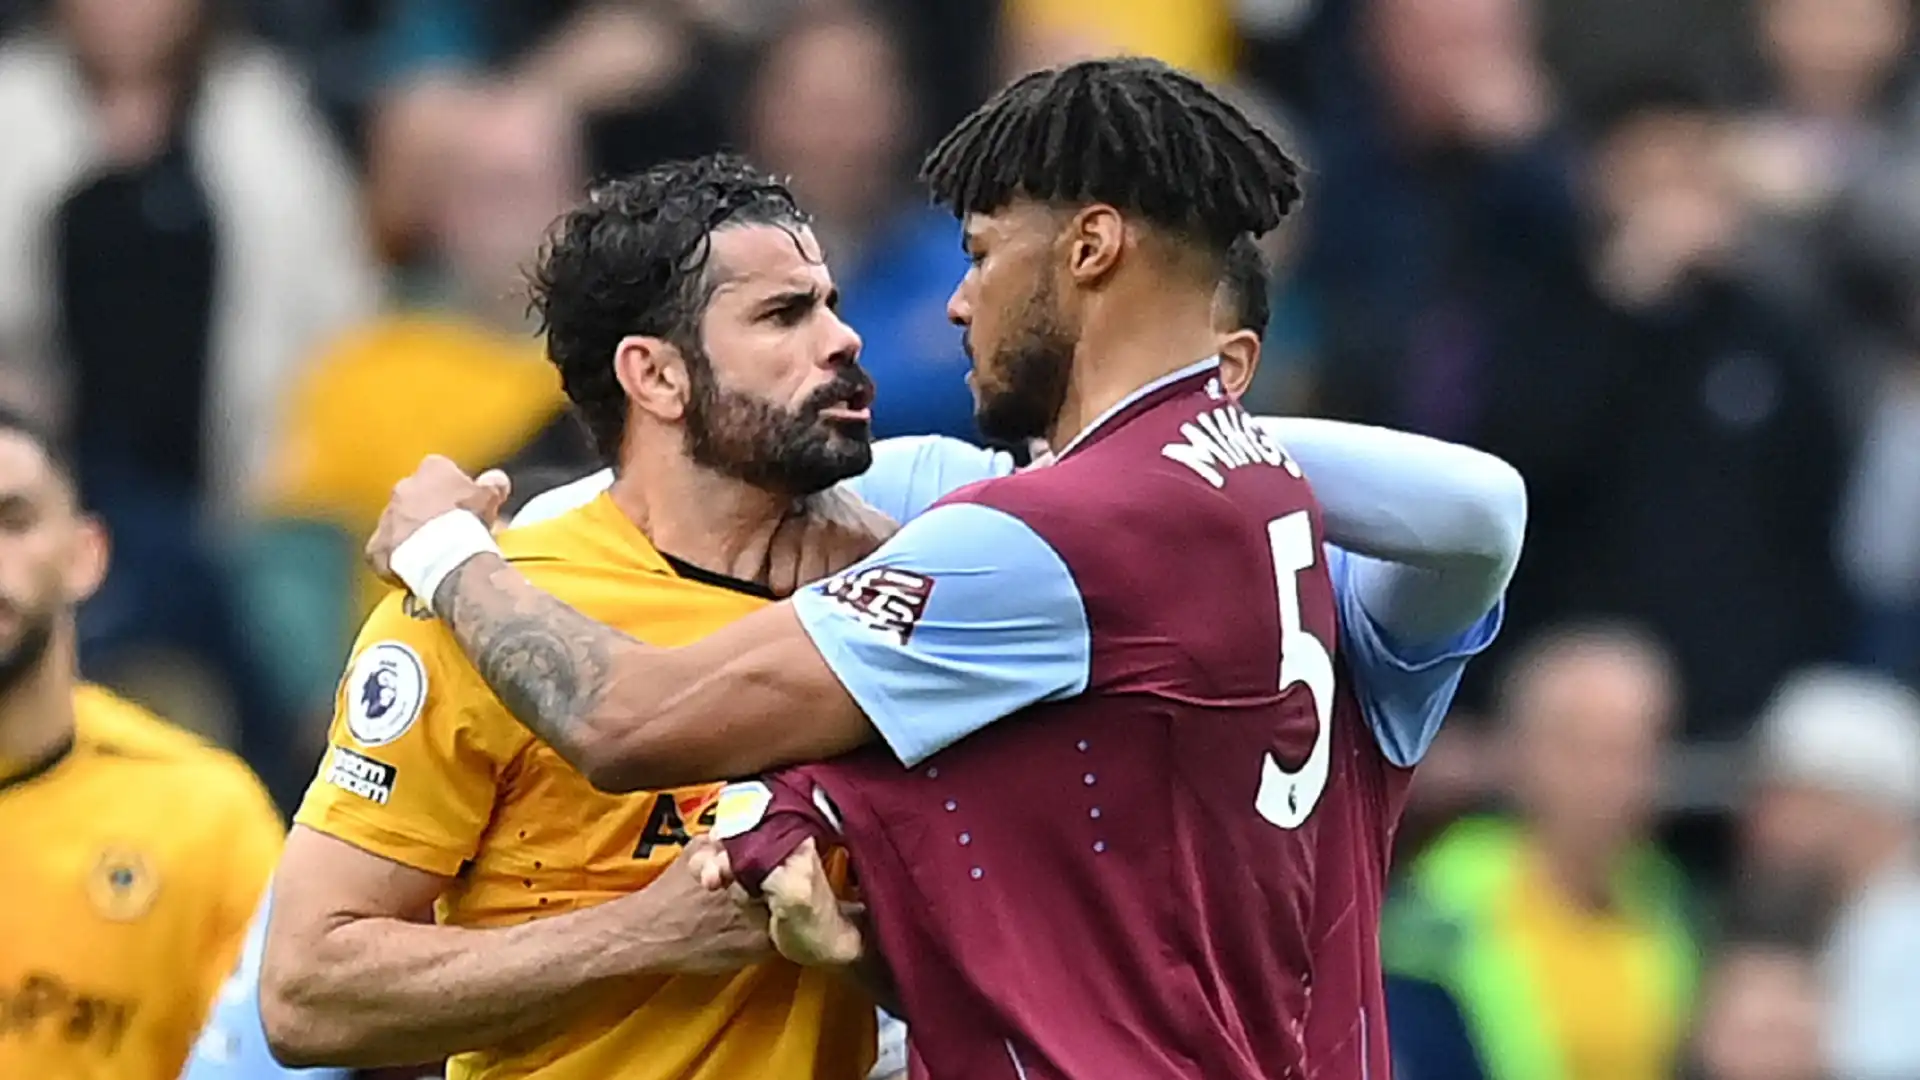 Momenti di tensione durante il match tra Wolverhampton e Aston Villa